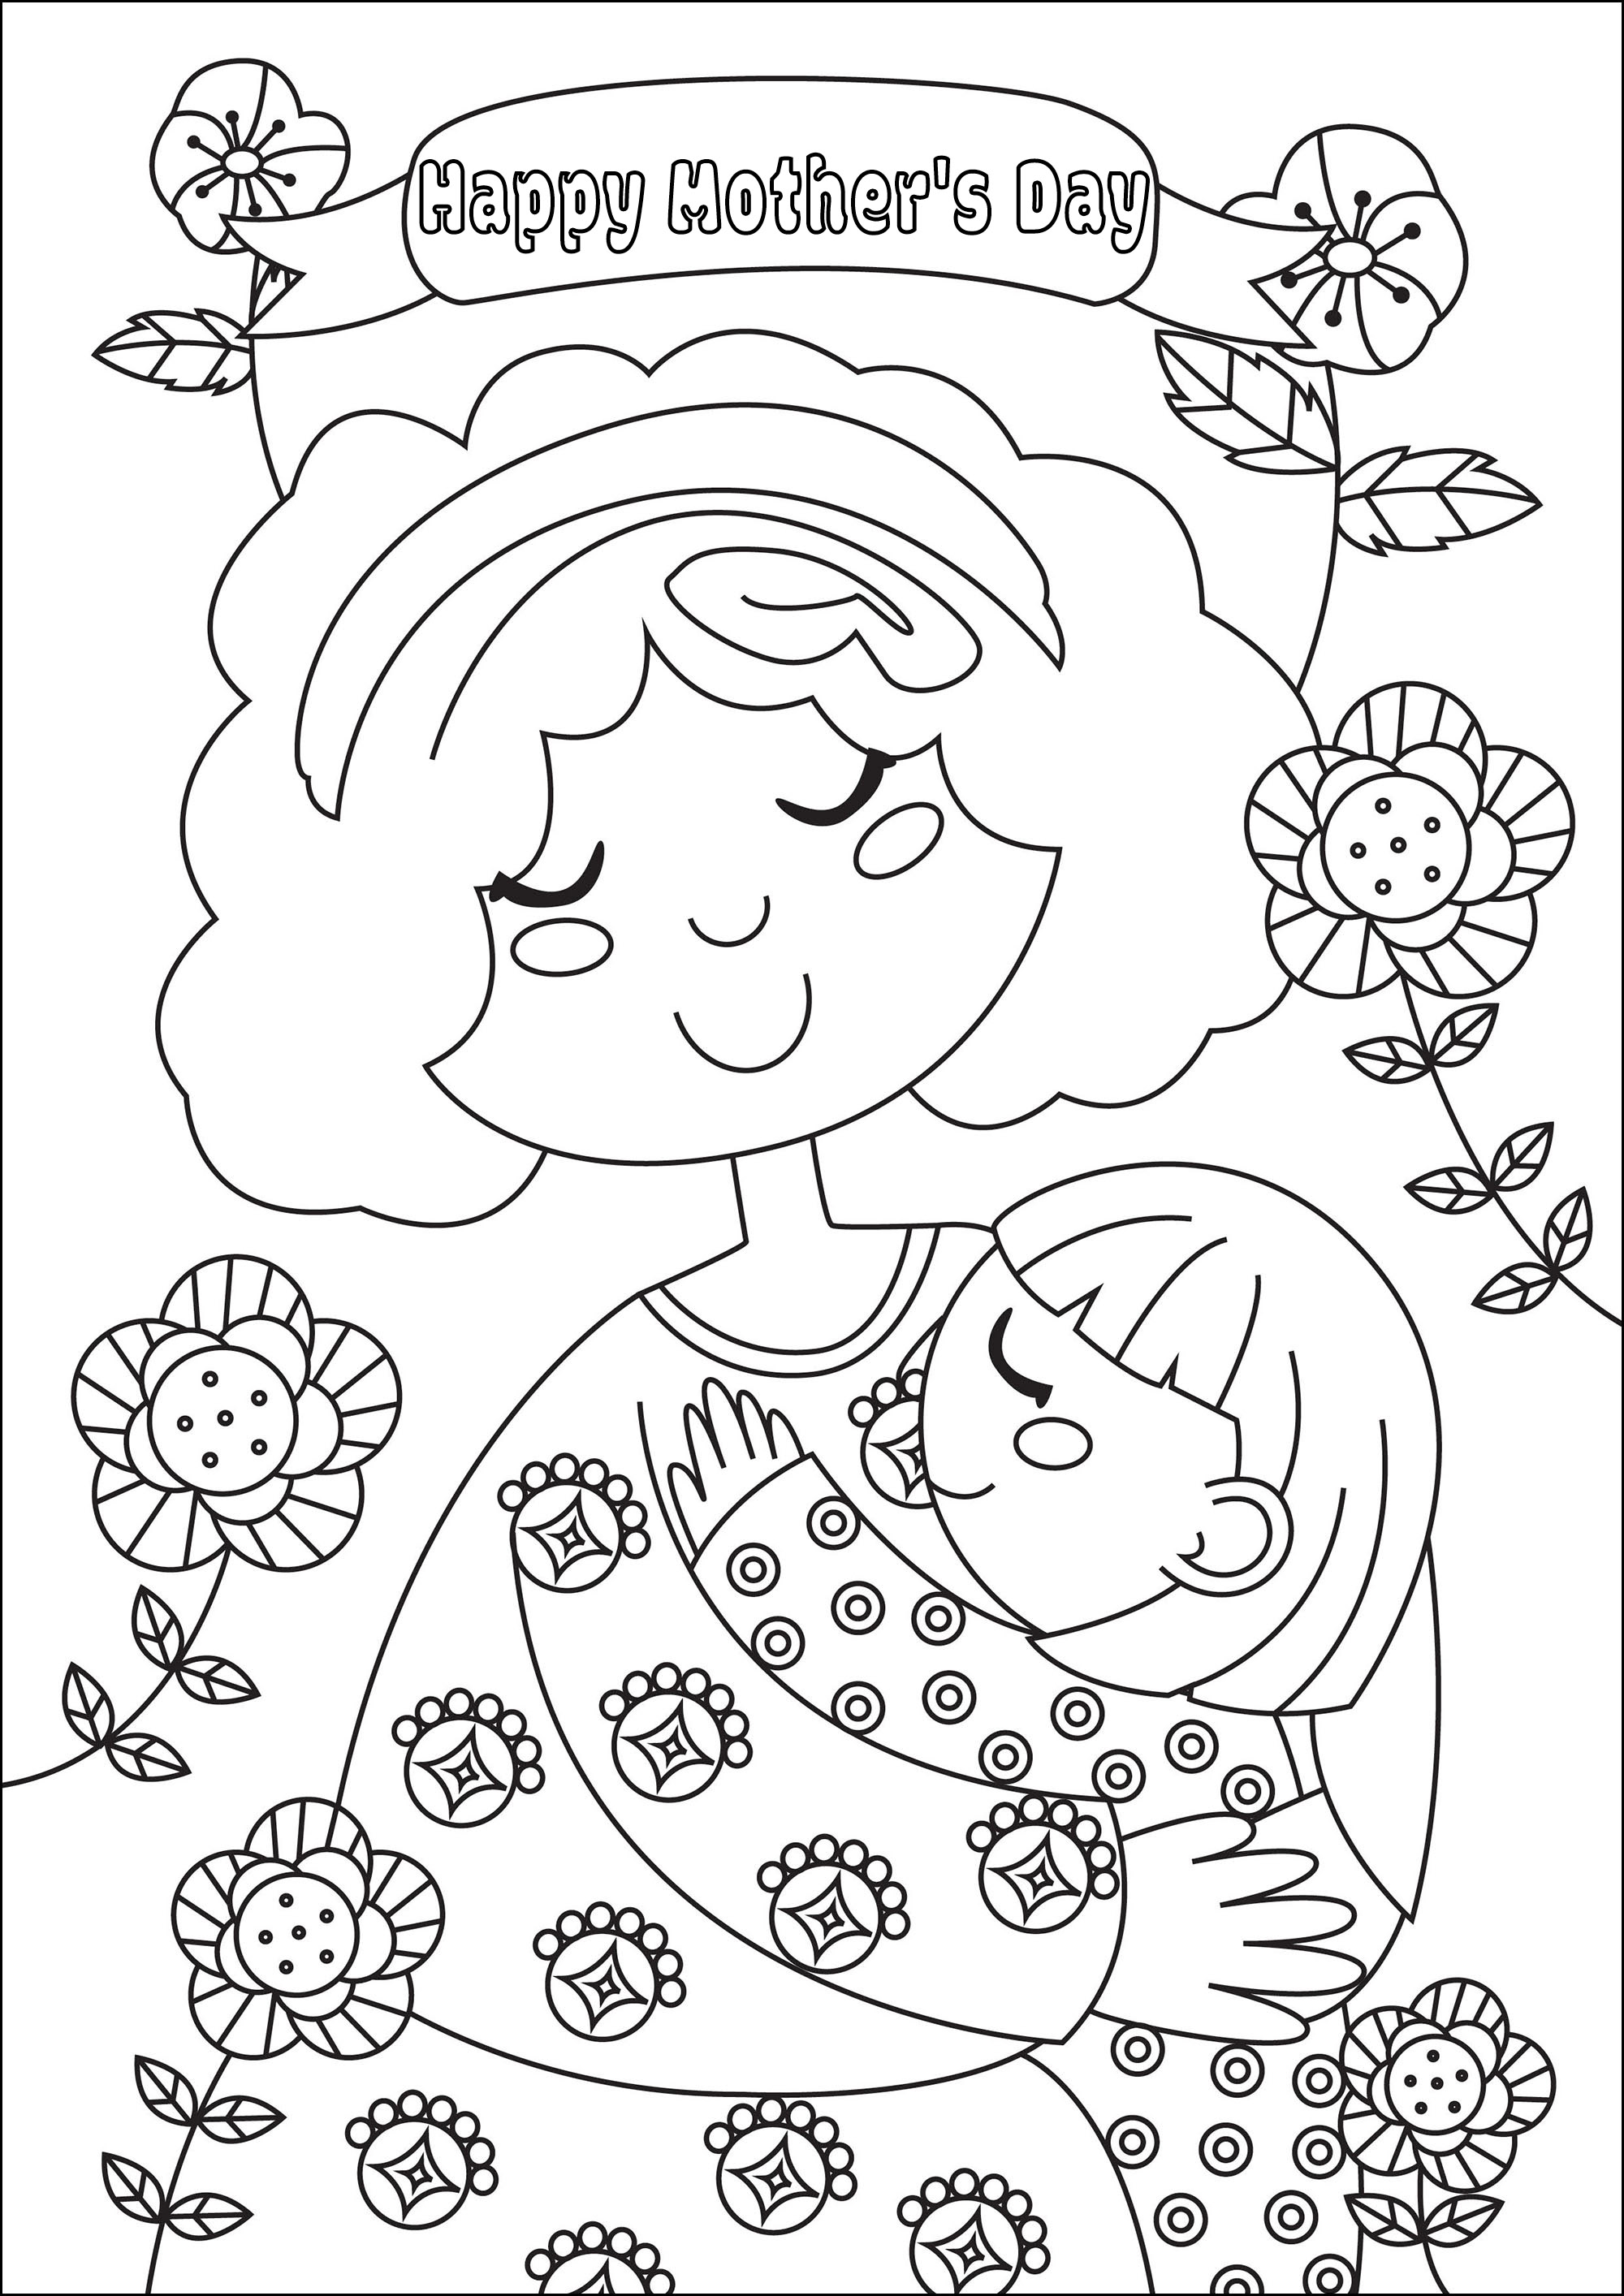 Colorir para o Dia da Mãe. Uma bonita página para colorir com uma menina a beijar a sua querida mãe, Artista : Gaelle Picard